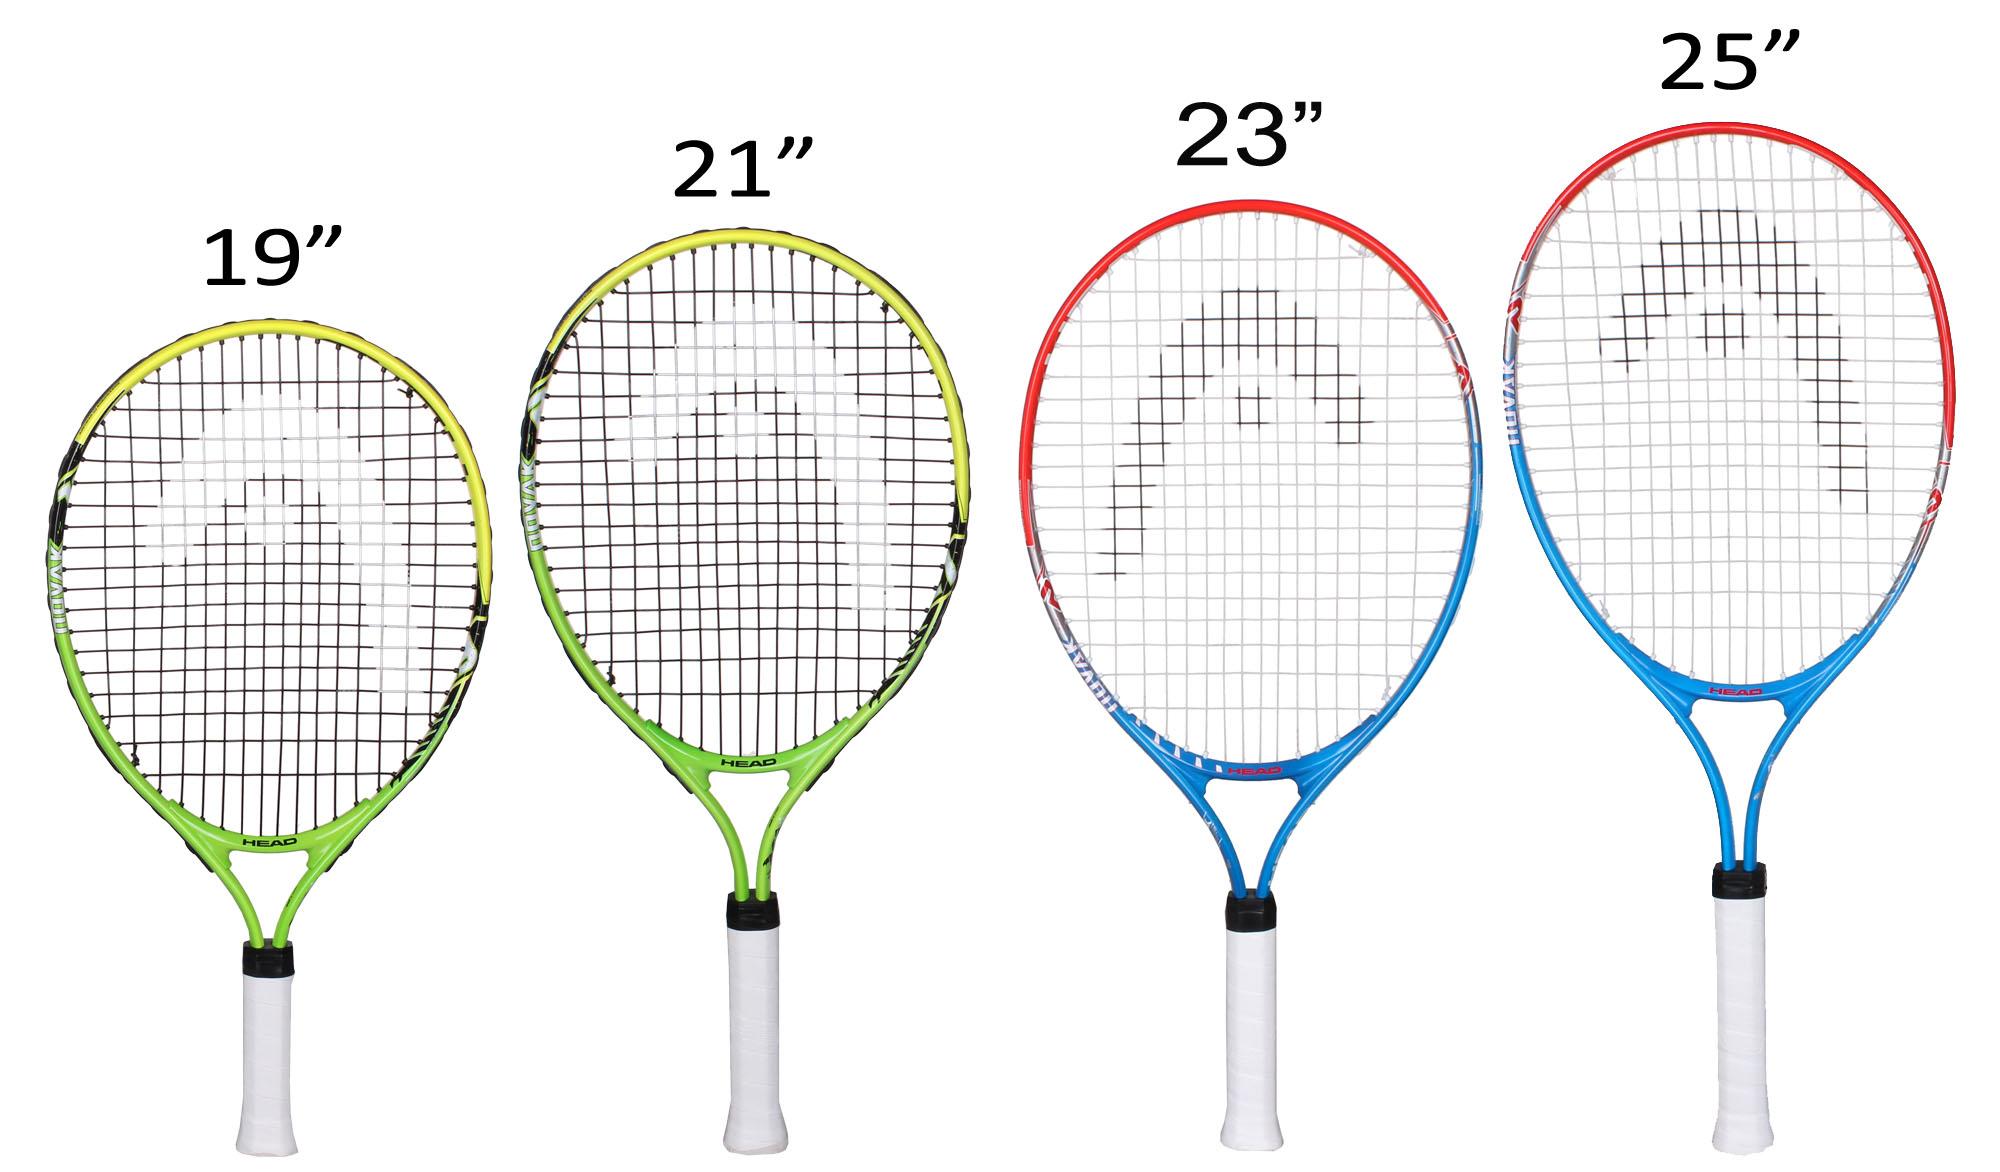 Как подобрать ракетку для тенниса. Размеры теннисной ракетки для большого тенниса 23. Ракетка для большого тенниса Размеры 26. Размер ручки ракетки для большого тенниса 3 7/8. Ракетка для большого тенниса head таблица размеров.